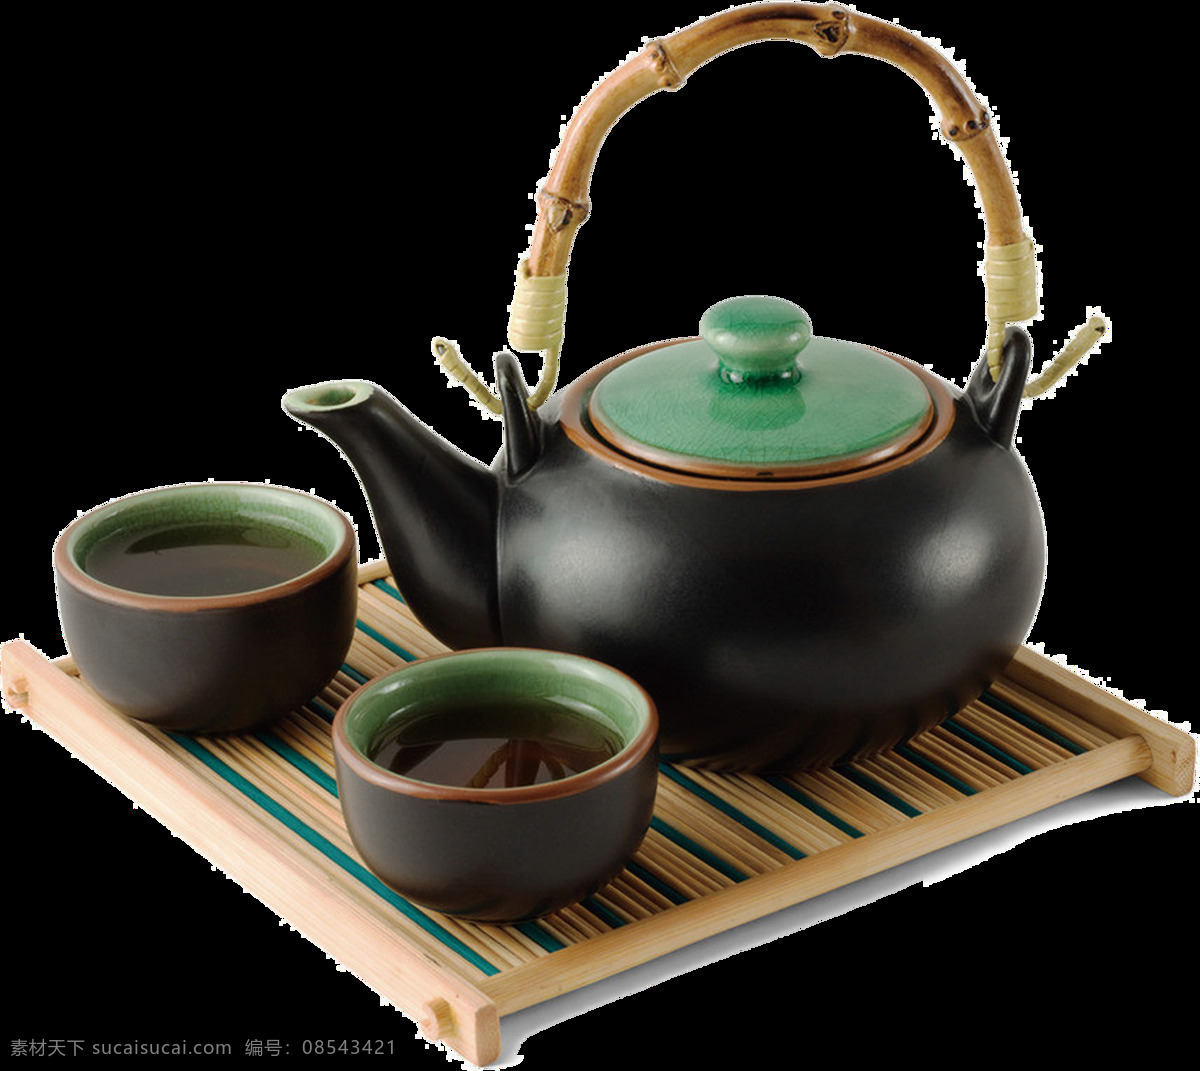 茶壶 中国 中国茶壶 茶杯 一套茶具 茶 喝茶 一杯茶 素材图 茶素材